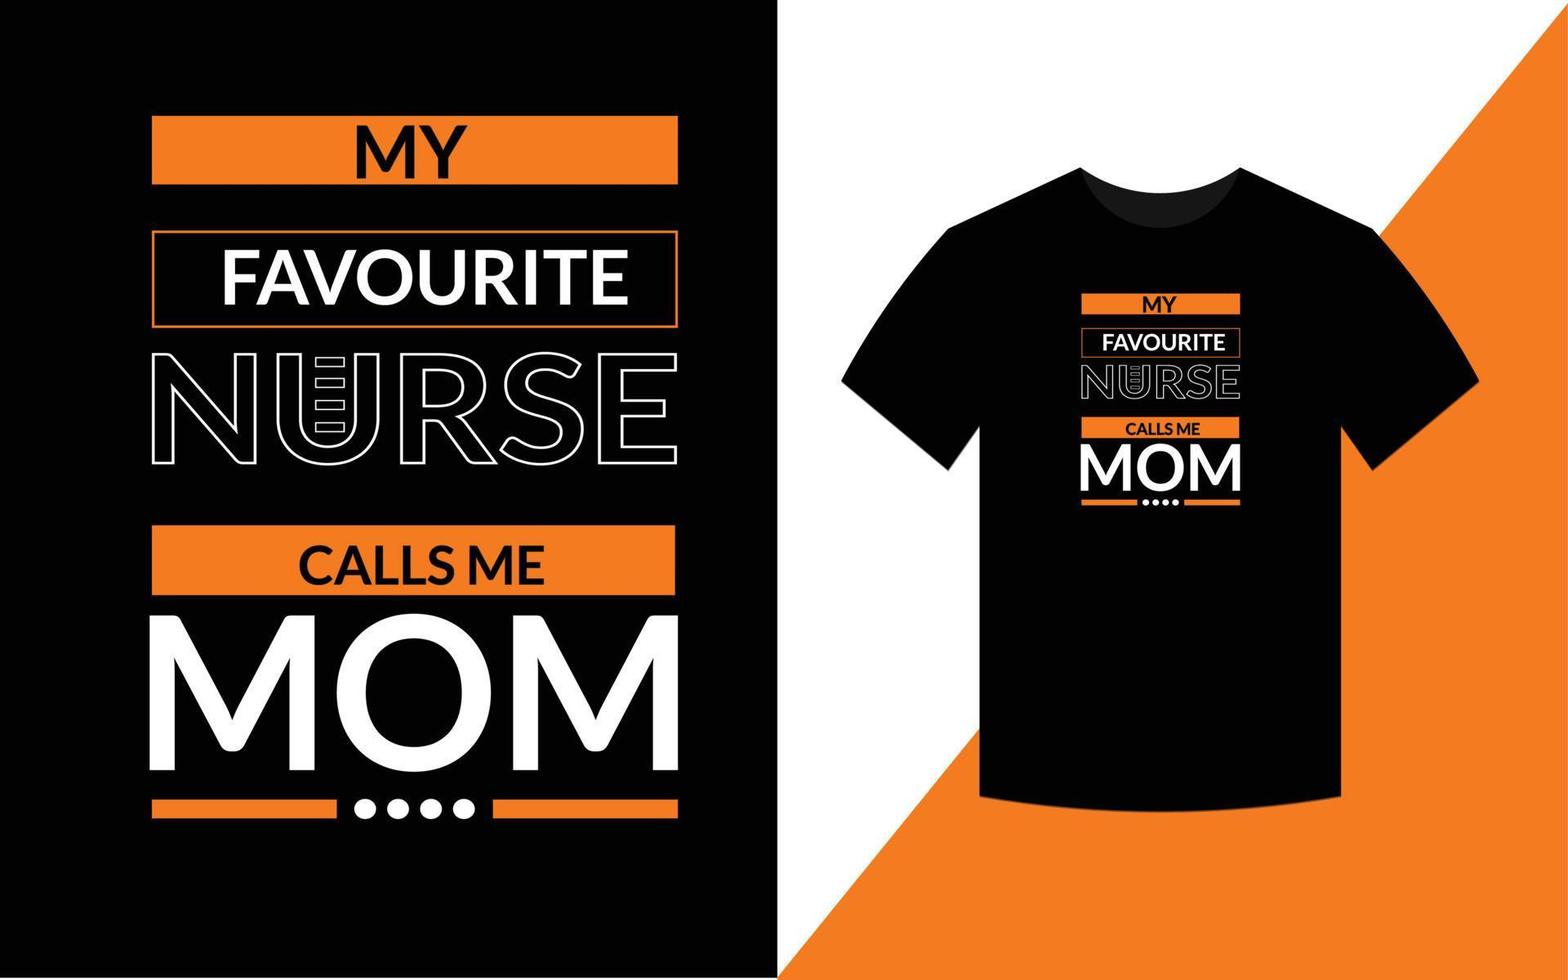 la mia infermiera preferita mi chiama mamma modello di progettazione di t-shirt per allattamento tipografia moderna vettore